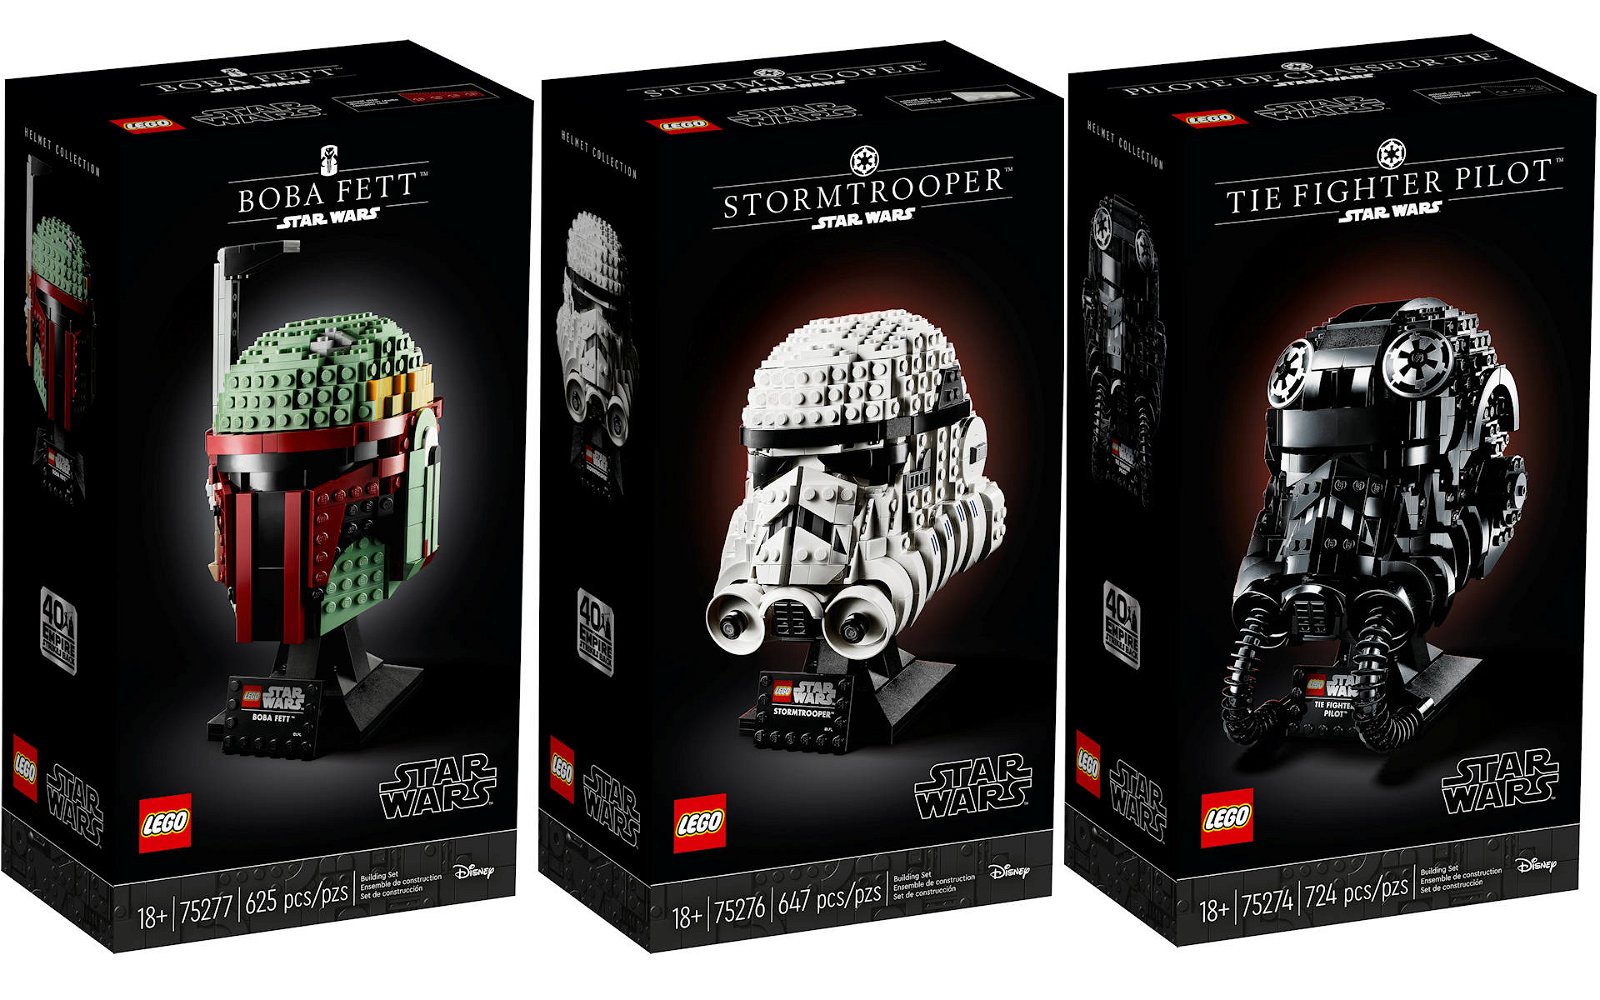 Immagine di LEGO caschi Star Wars: arrivano Boba Fett, Stormtrooper e TIE Fighter Pilot